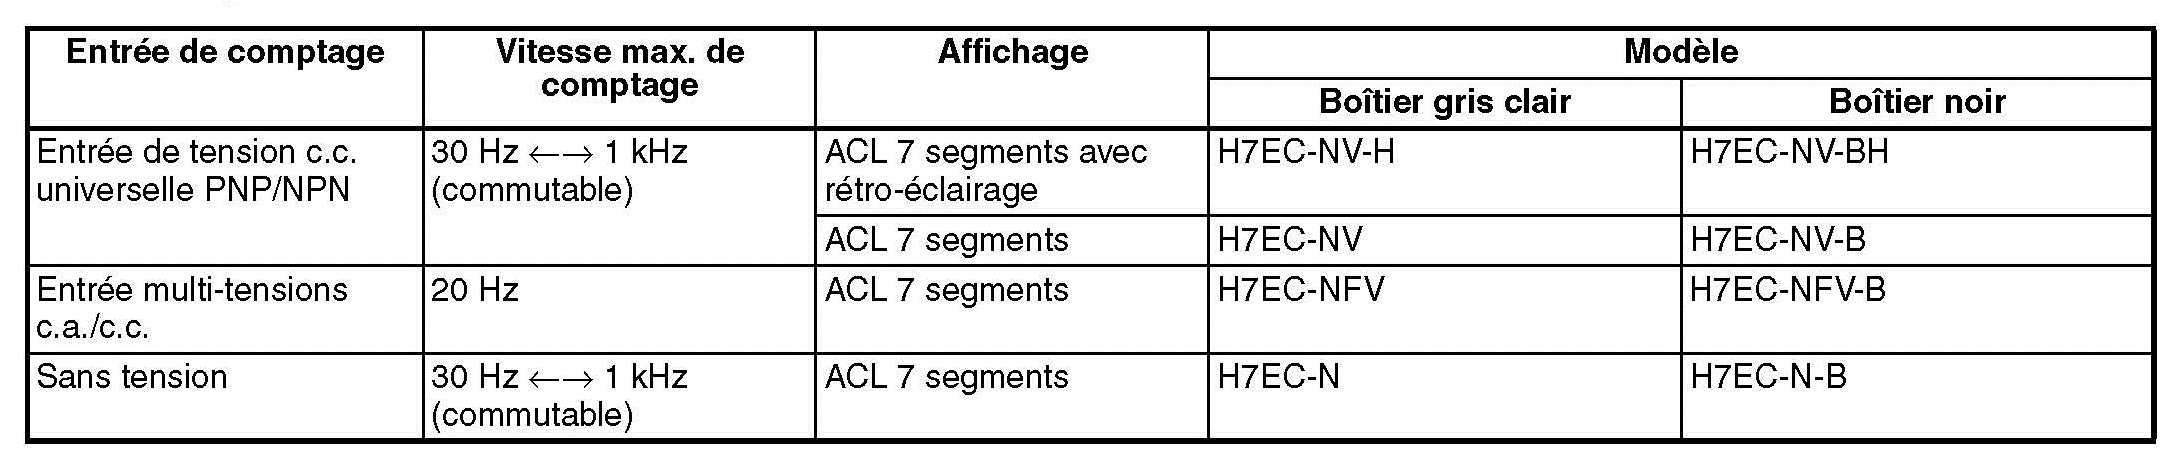 Tableau références H7EC